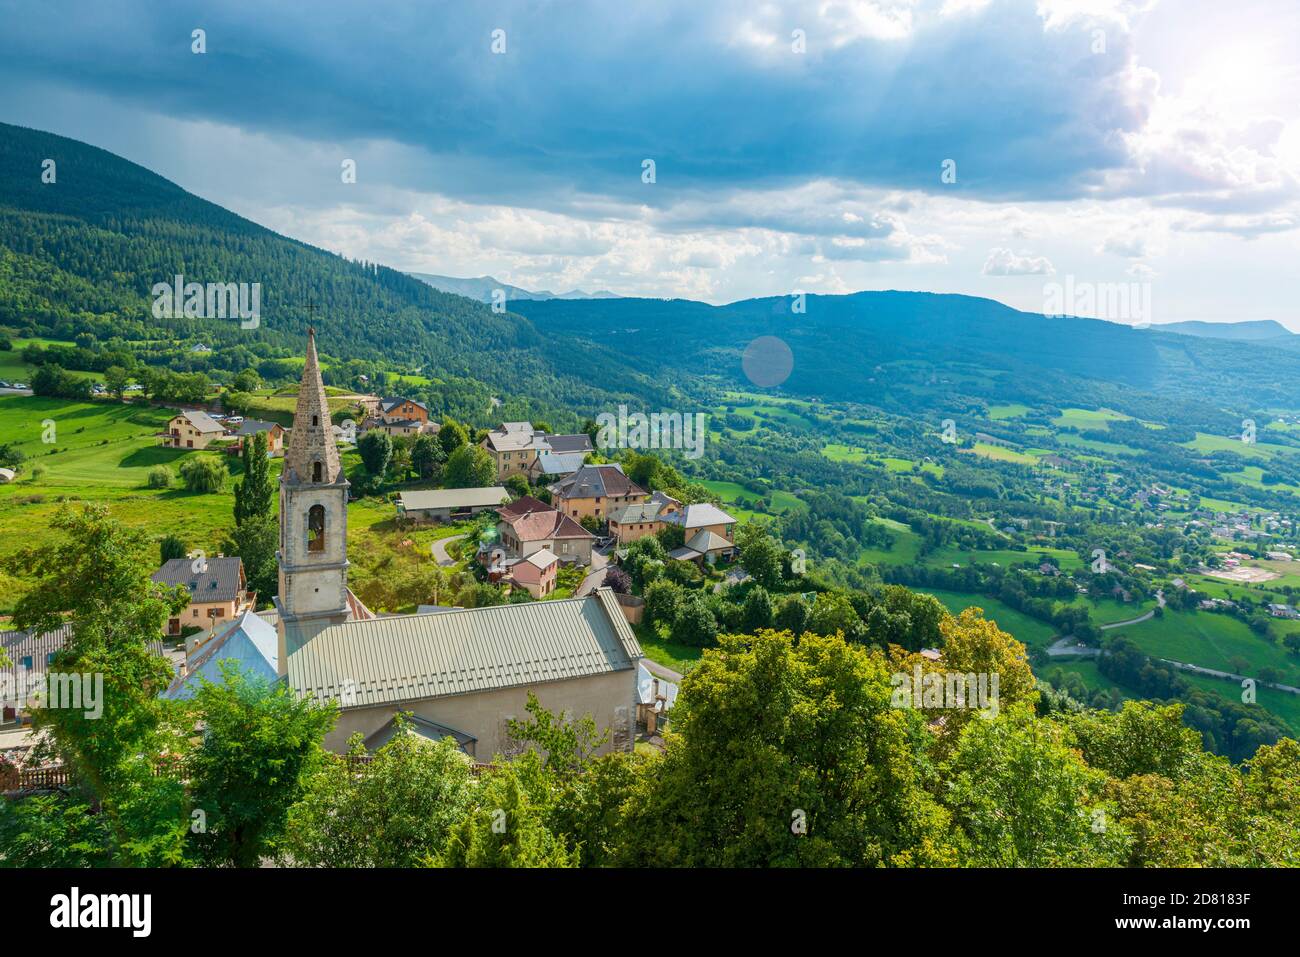 Provenza paesaggio in Francia. Piccola città sulla cima della collina circondata da alte montagne. Vacanze estive in isolamento sociale Foto Stock